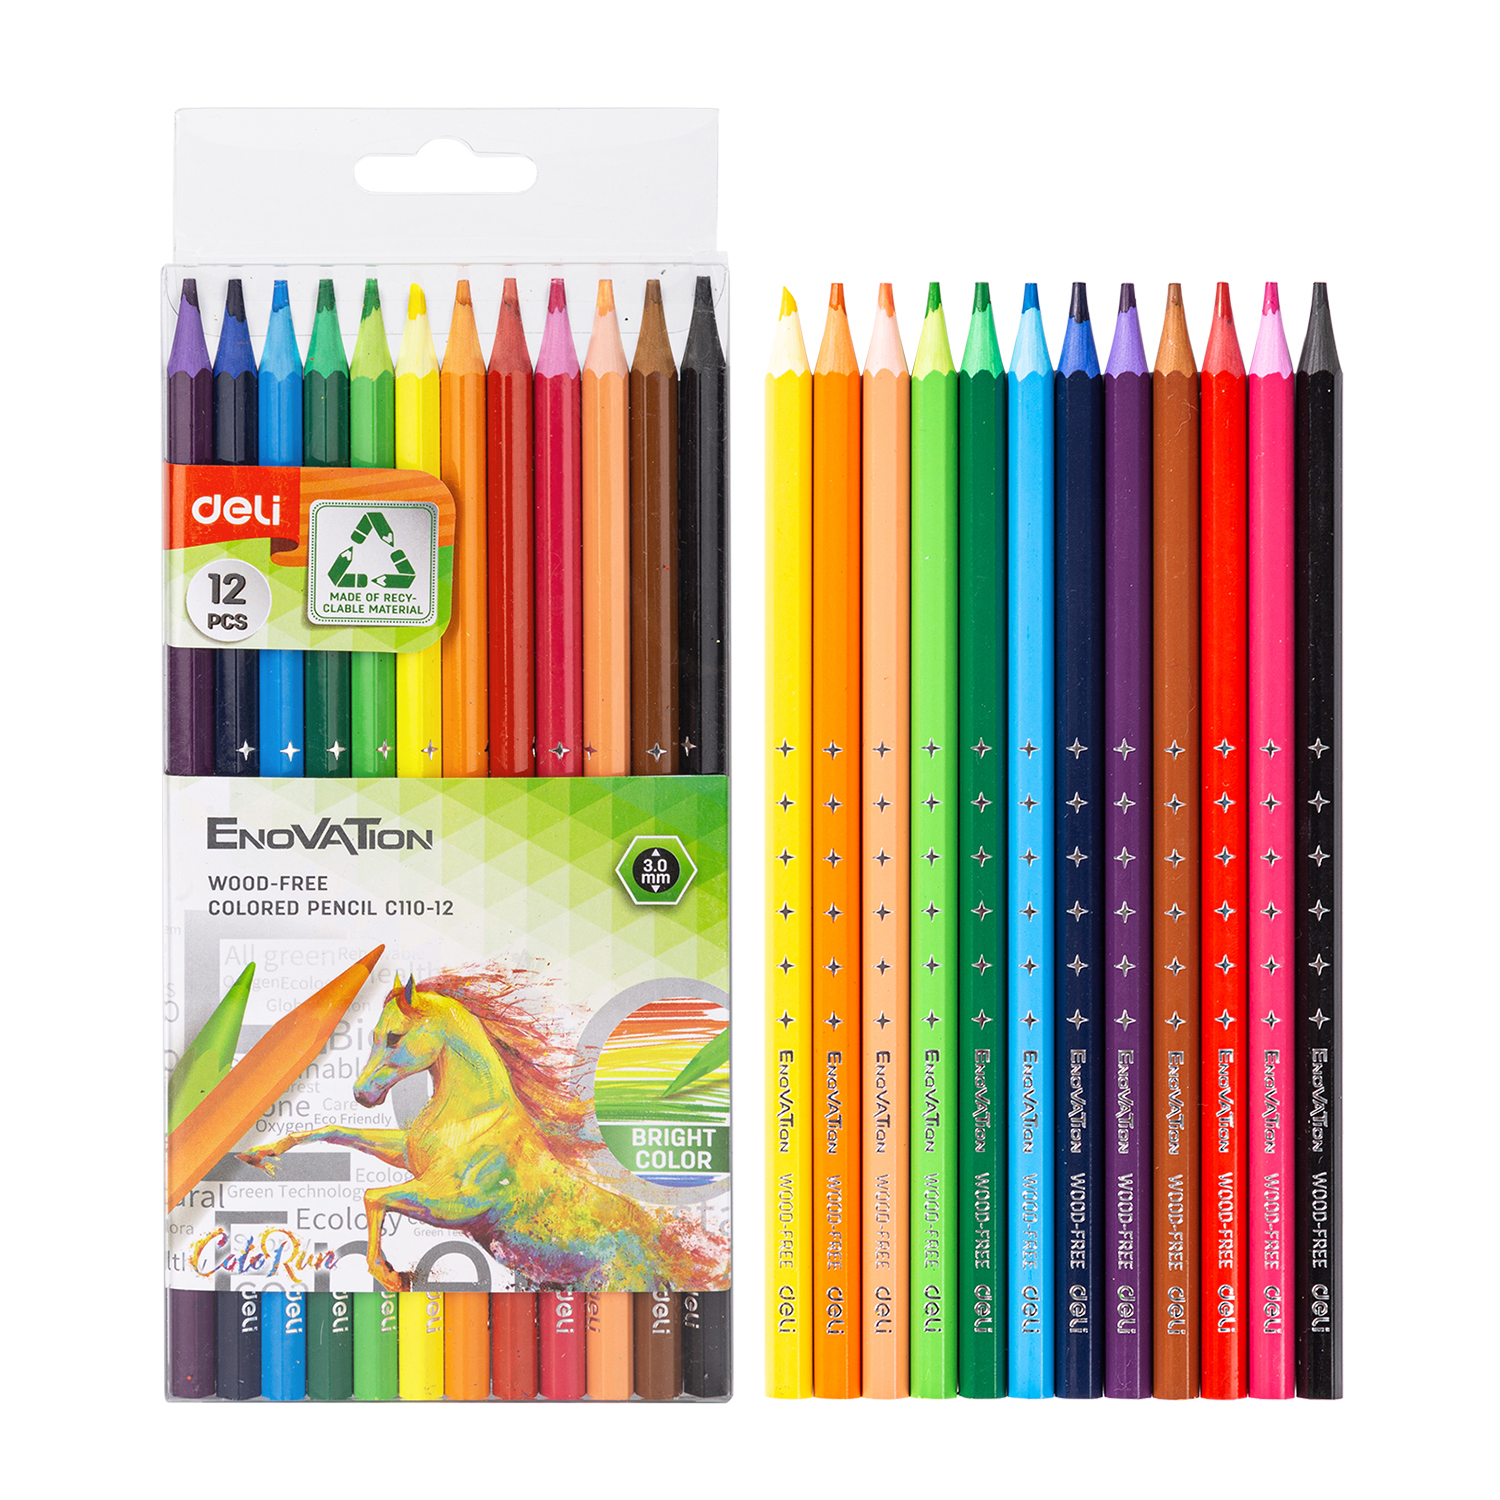 Deli-EC110-12 Colored Pencil